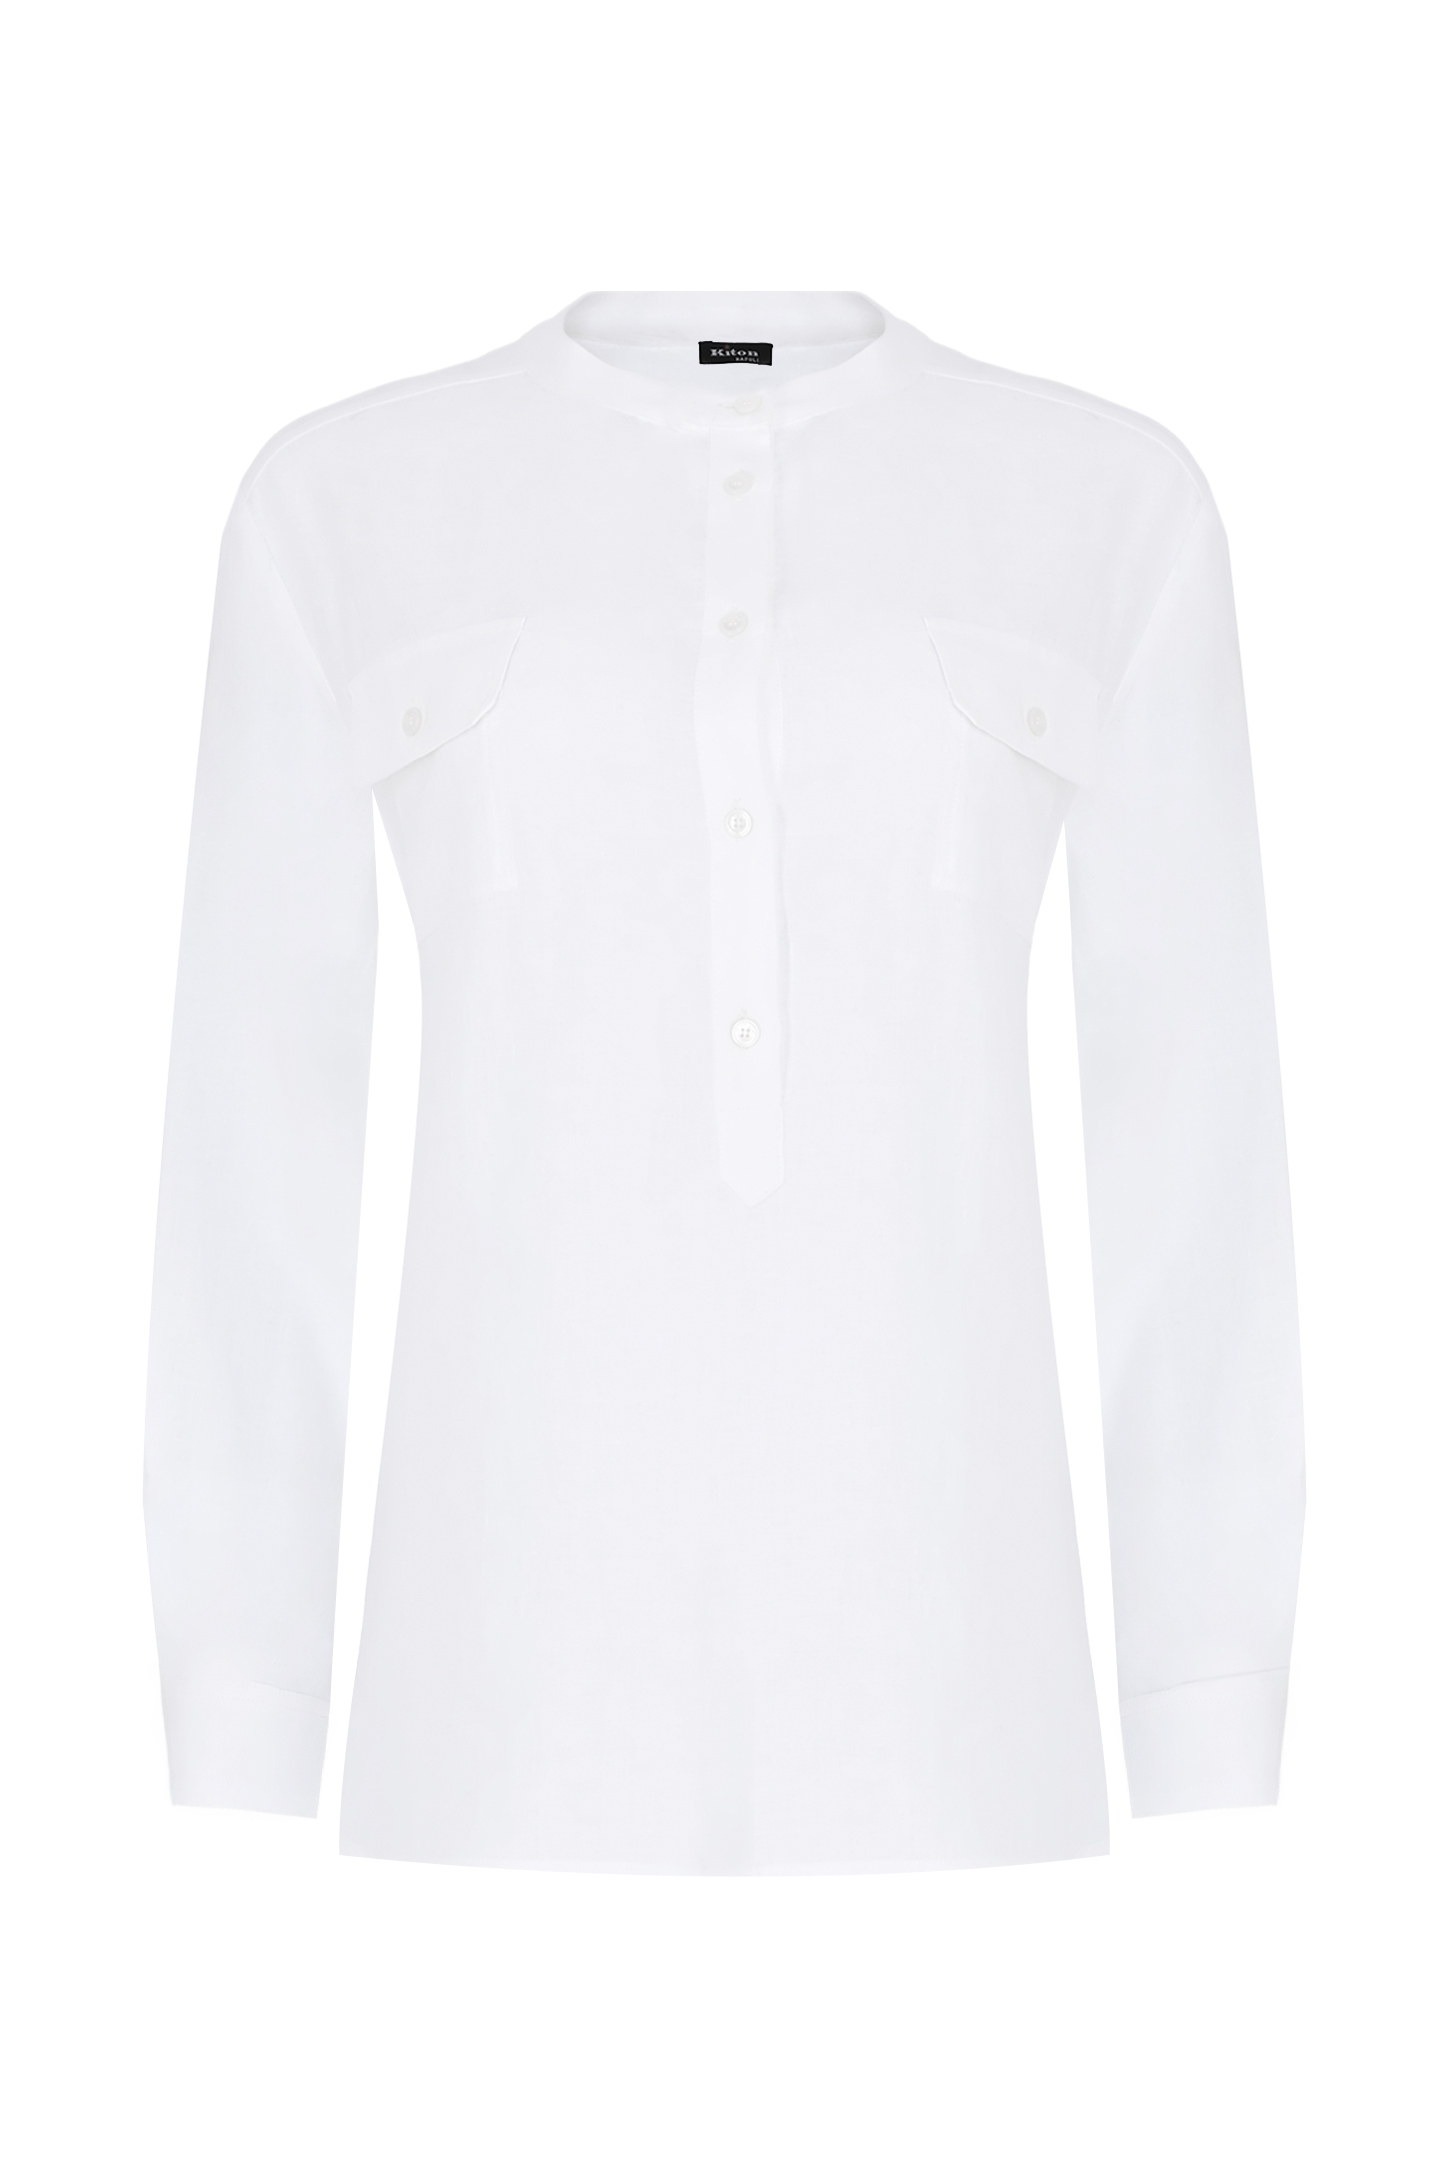 Блуза KITON D55448H08838, цвет: Белый, Женский